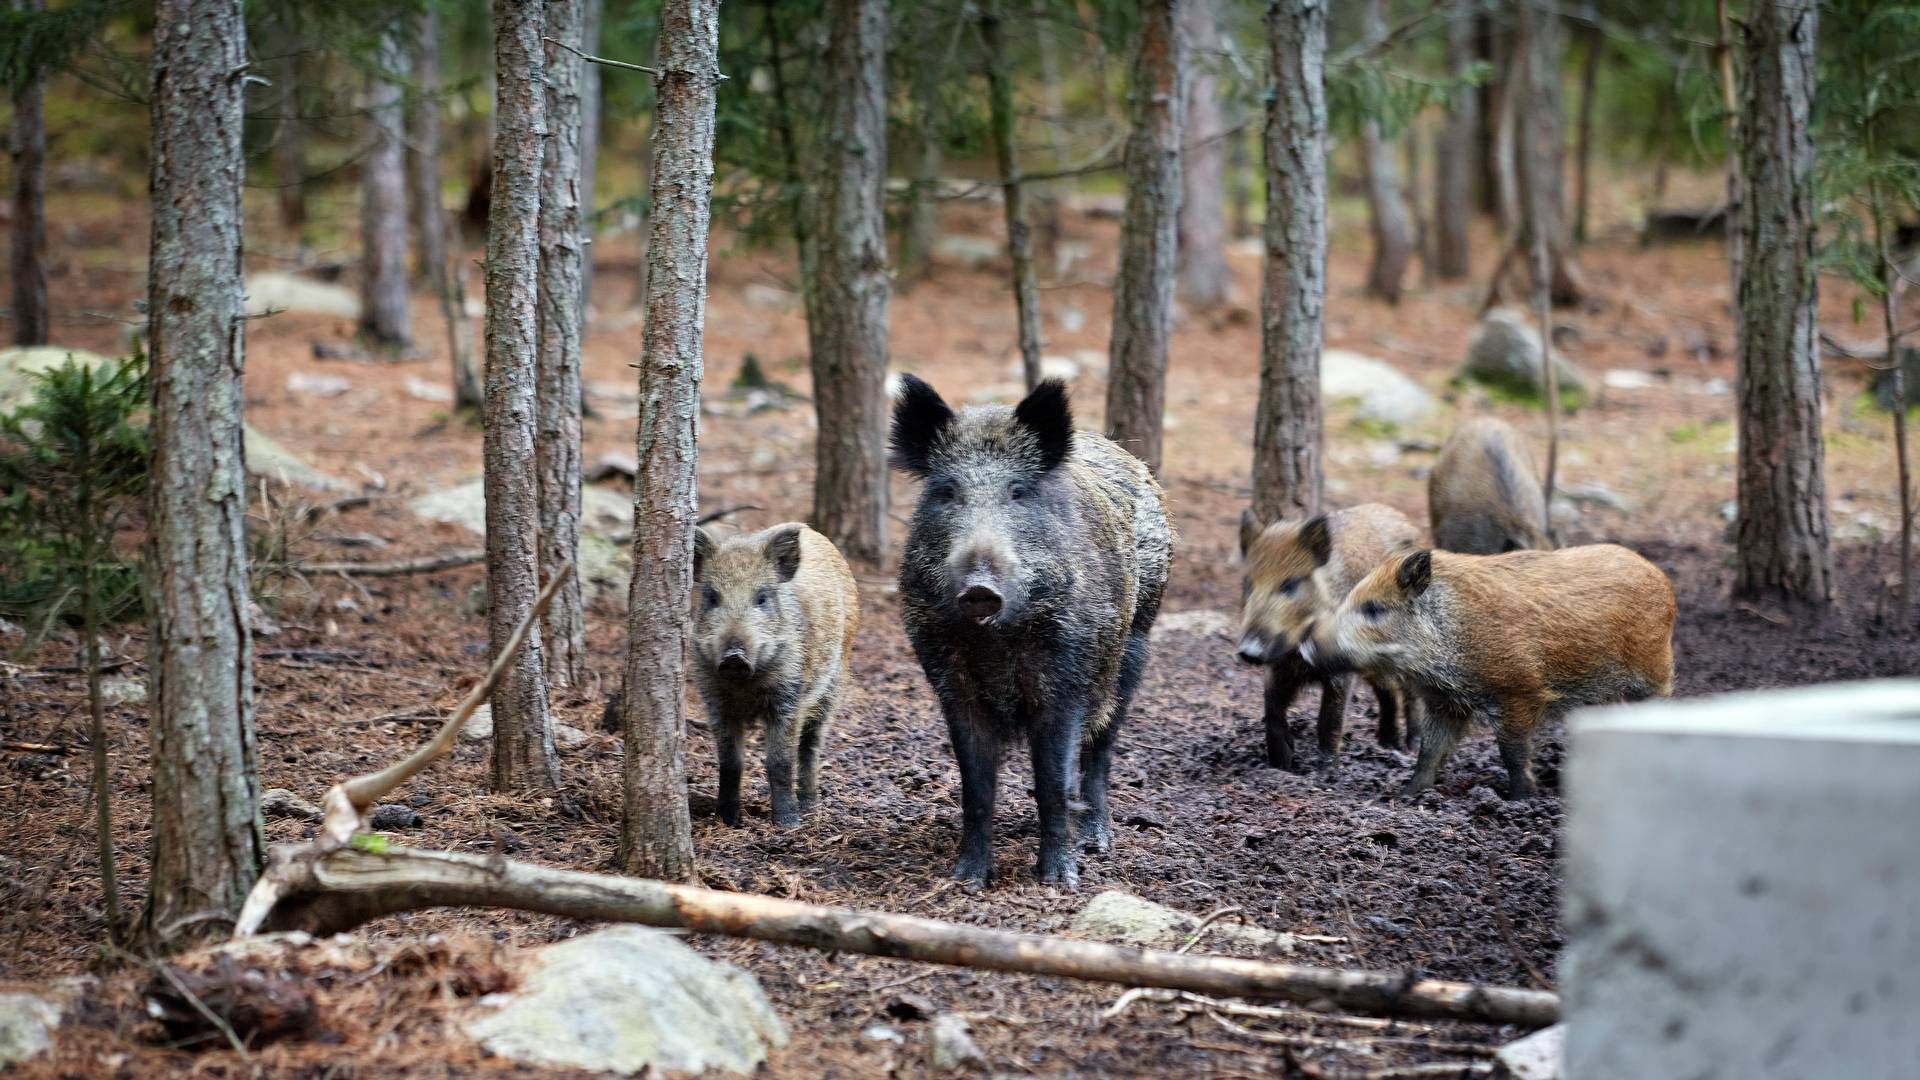 Afrikansk svinepest blev konstateret i Sverige i september. | Foto: Morten Langkilde